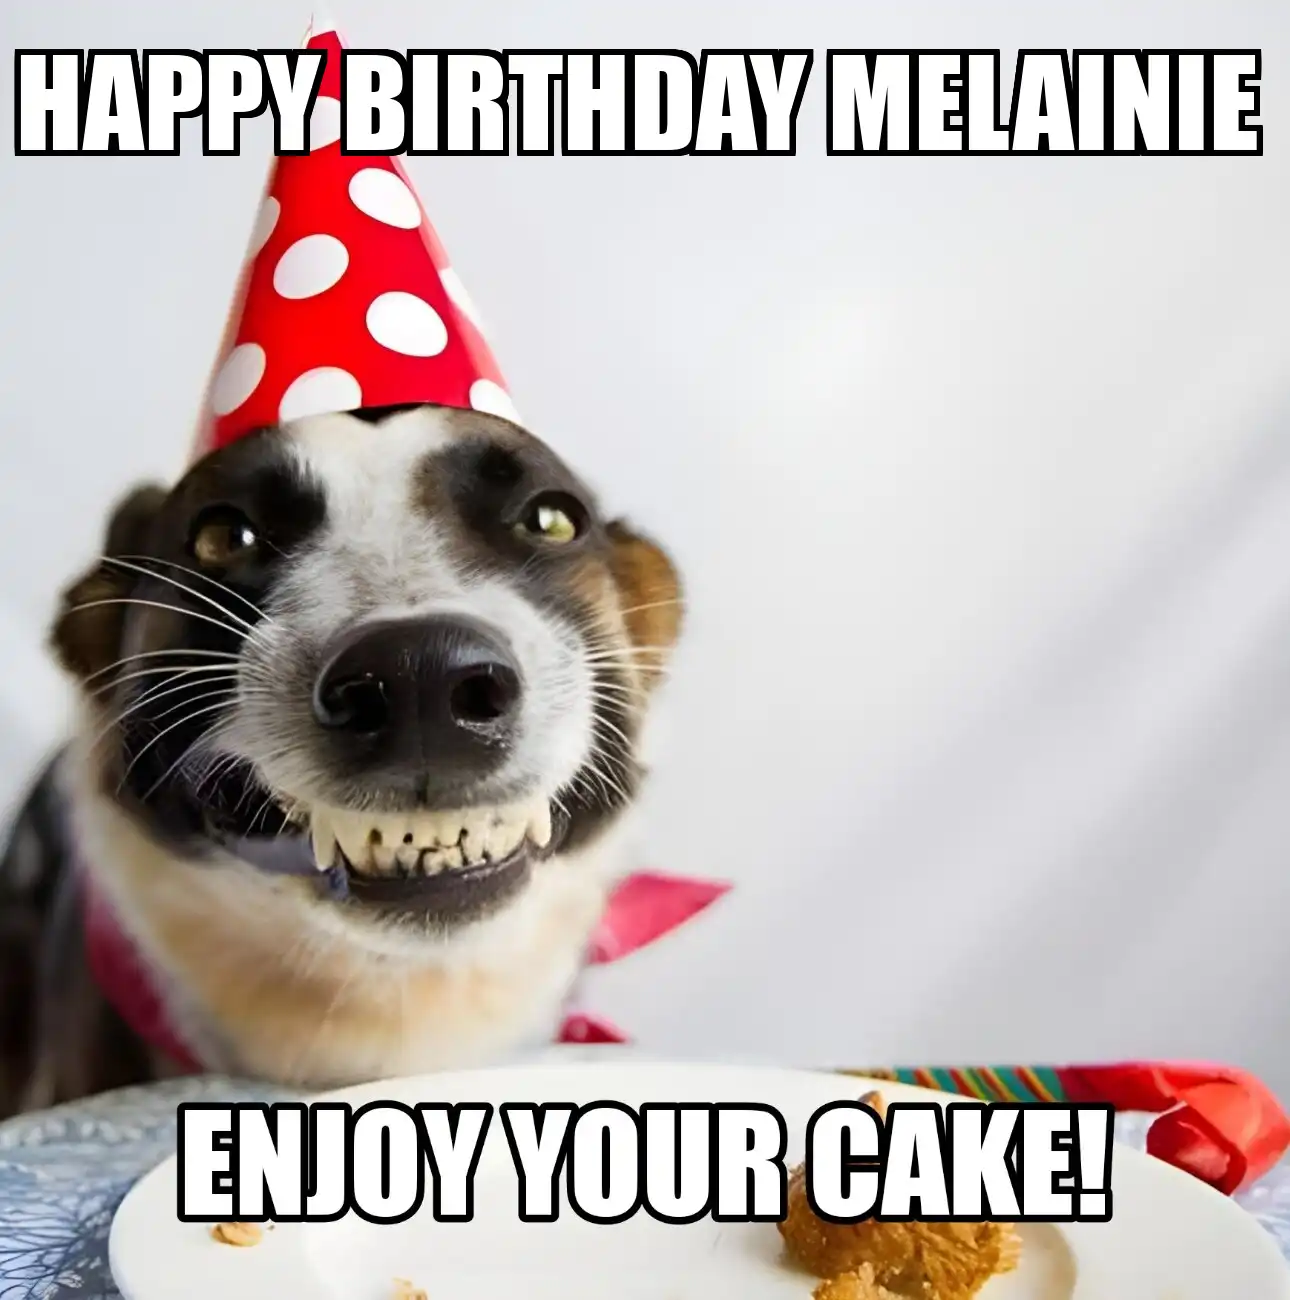 Happy Birthday Melainie Enjoy Your Cake Dog Meme